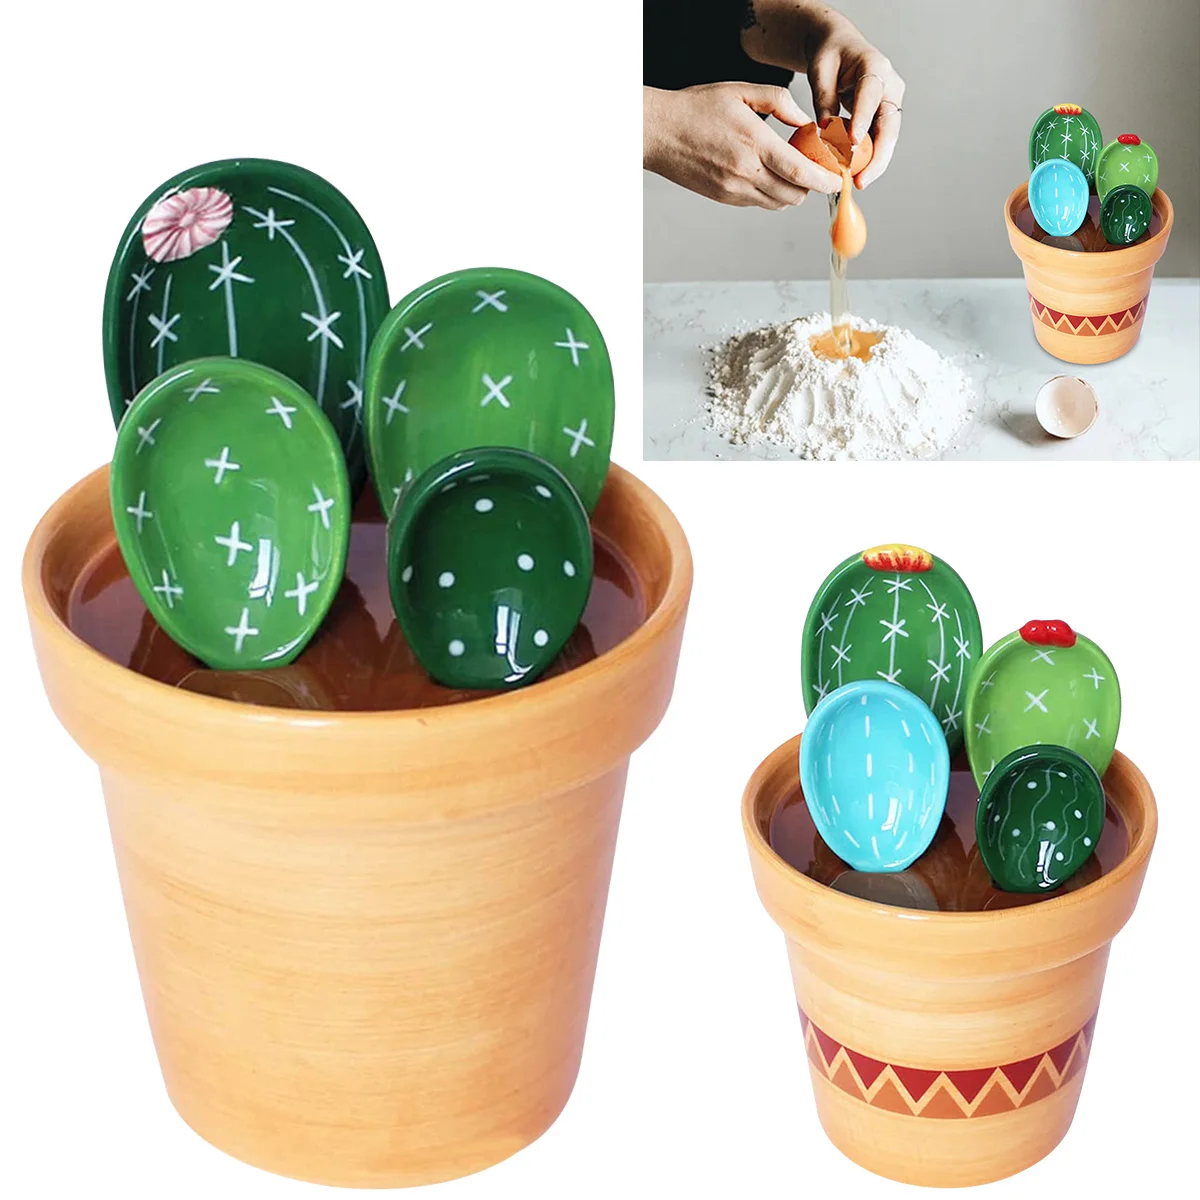 

4Pcs Porcelain Measuring Spoons Set with Base Cute Cactus Shape Stirring Soup Spoon Reusable and Durable Ceramic Flower Pot